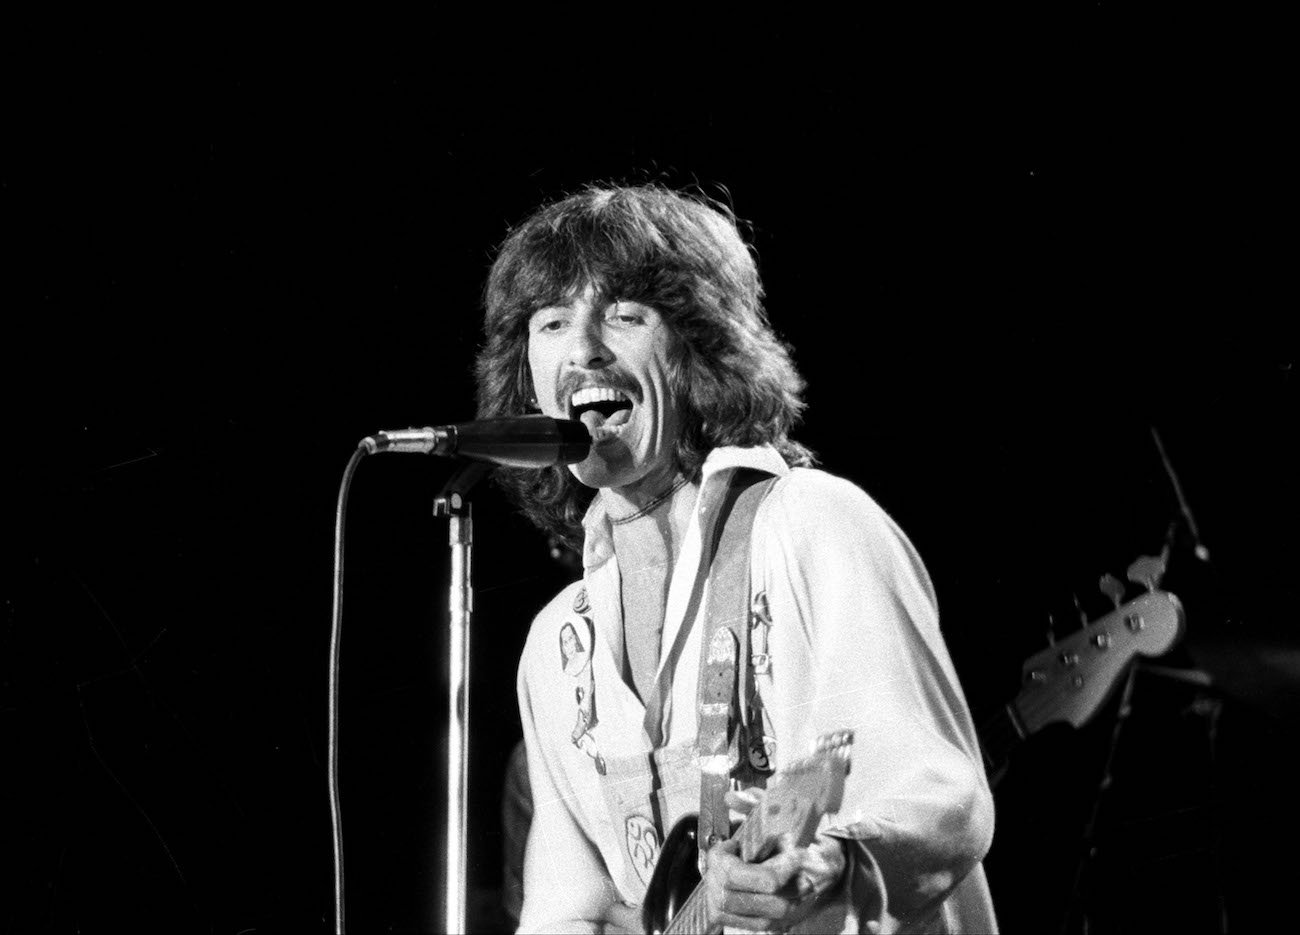 George Harrison performing in 1974.